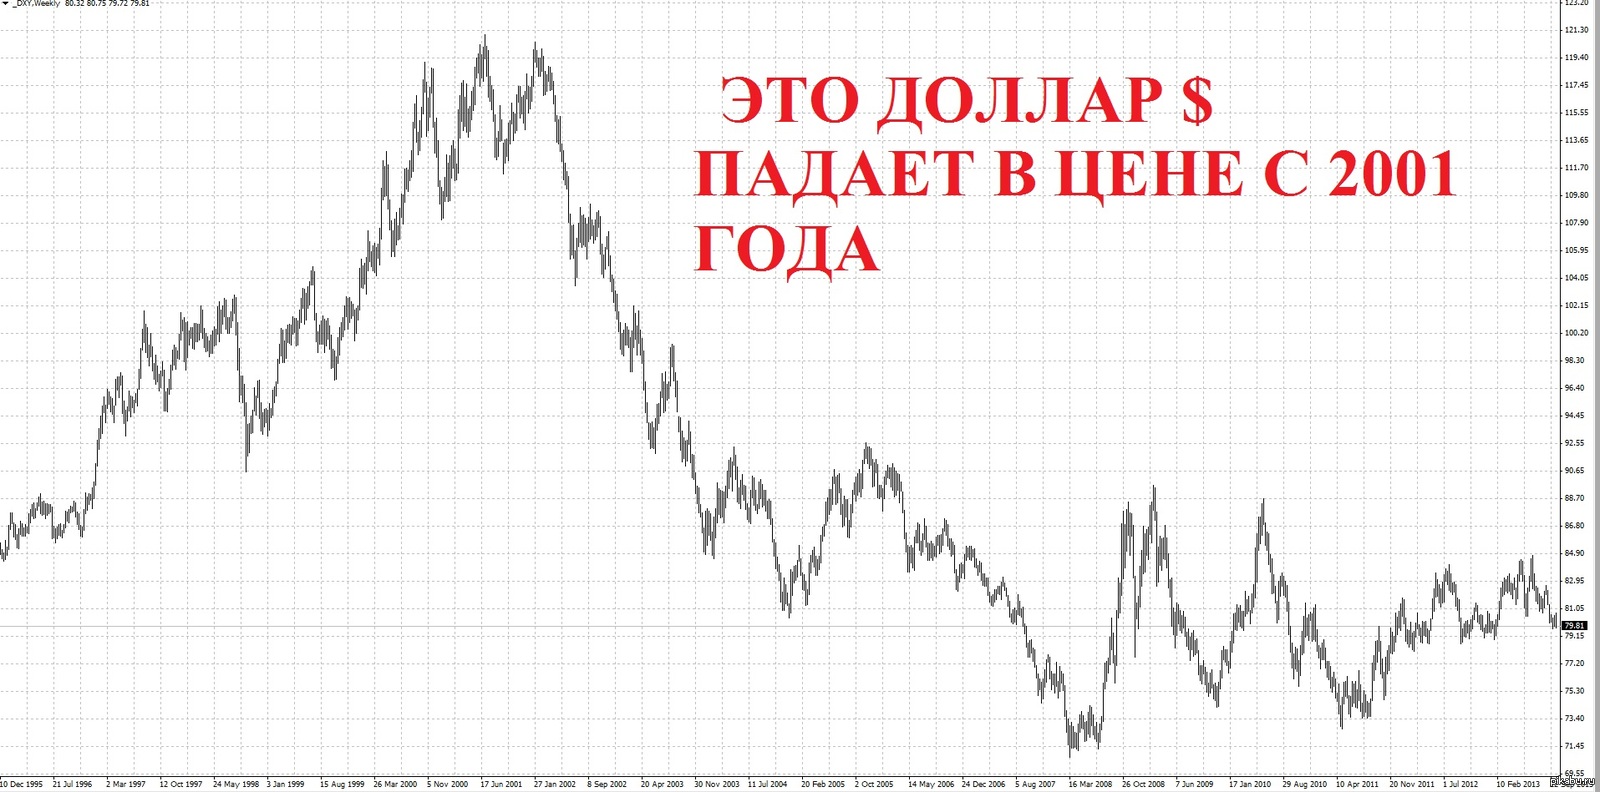 Почему падают количество. Курс доллара. Курс доллара падает. Почему доллар падает. Курс доллара в 2001 году.